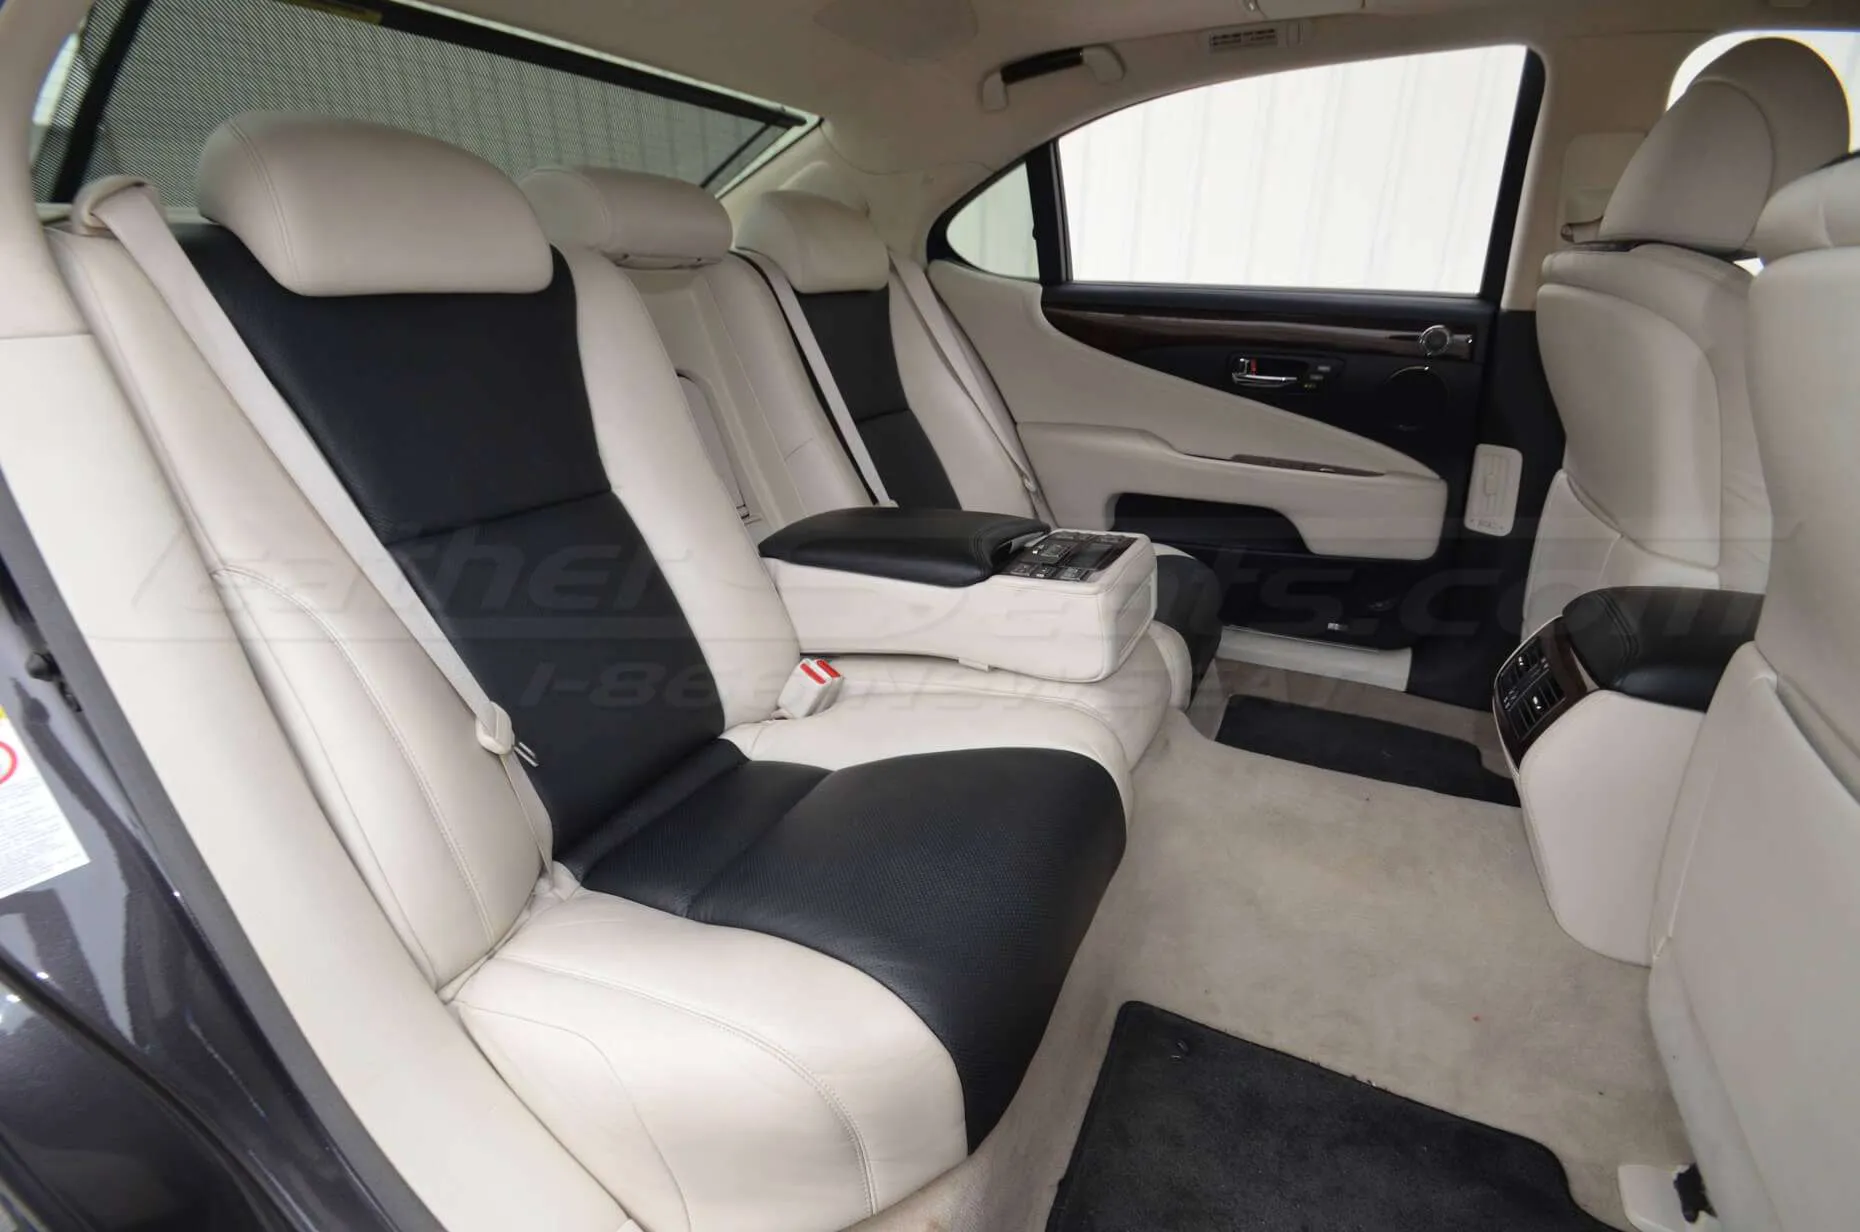 Lexus LS iLeather Seats - Installed - Rear seats